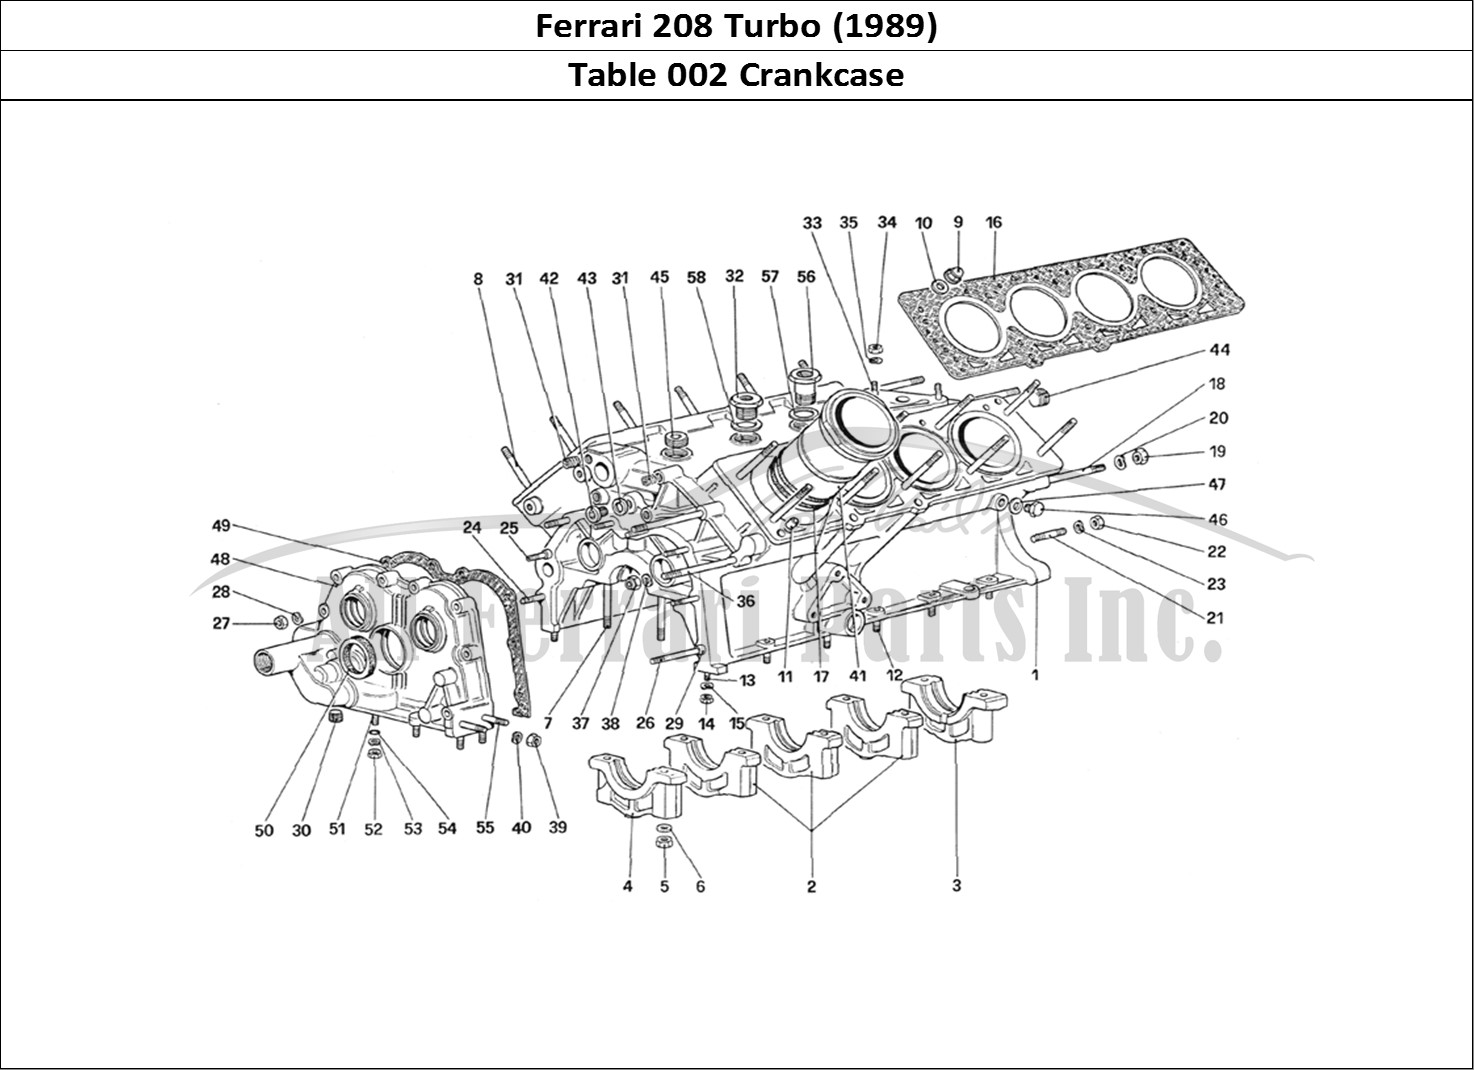 Ferrari Parts Ferrari 208 Turbo (1989) Page 002 Crankcase